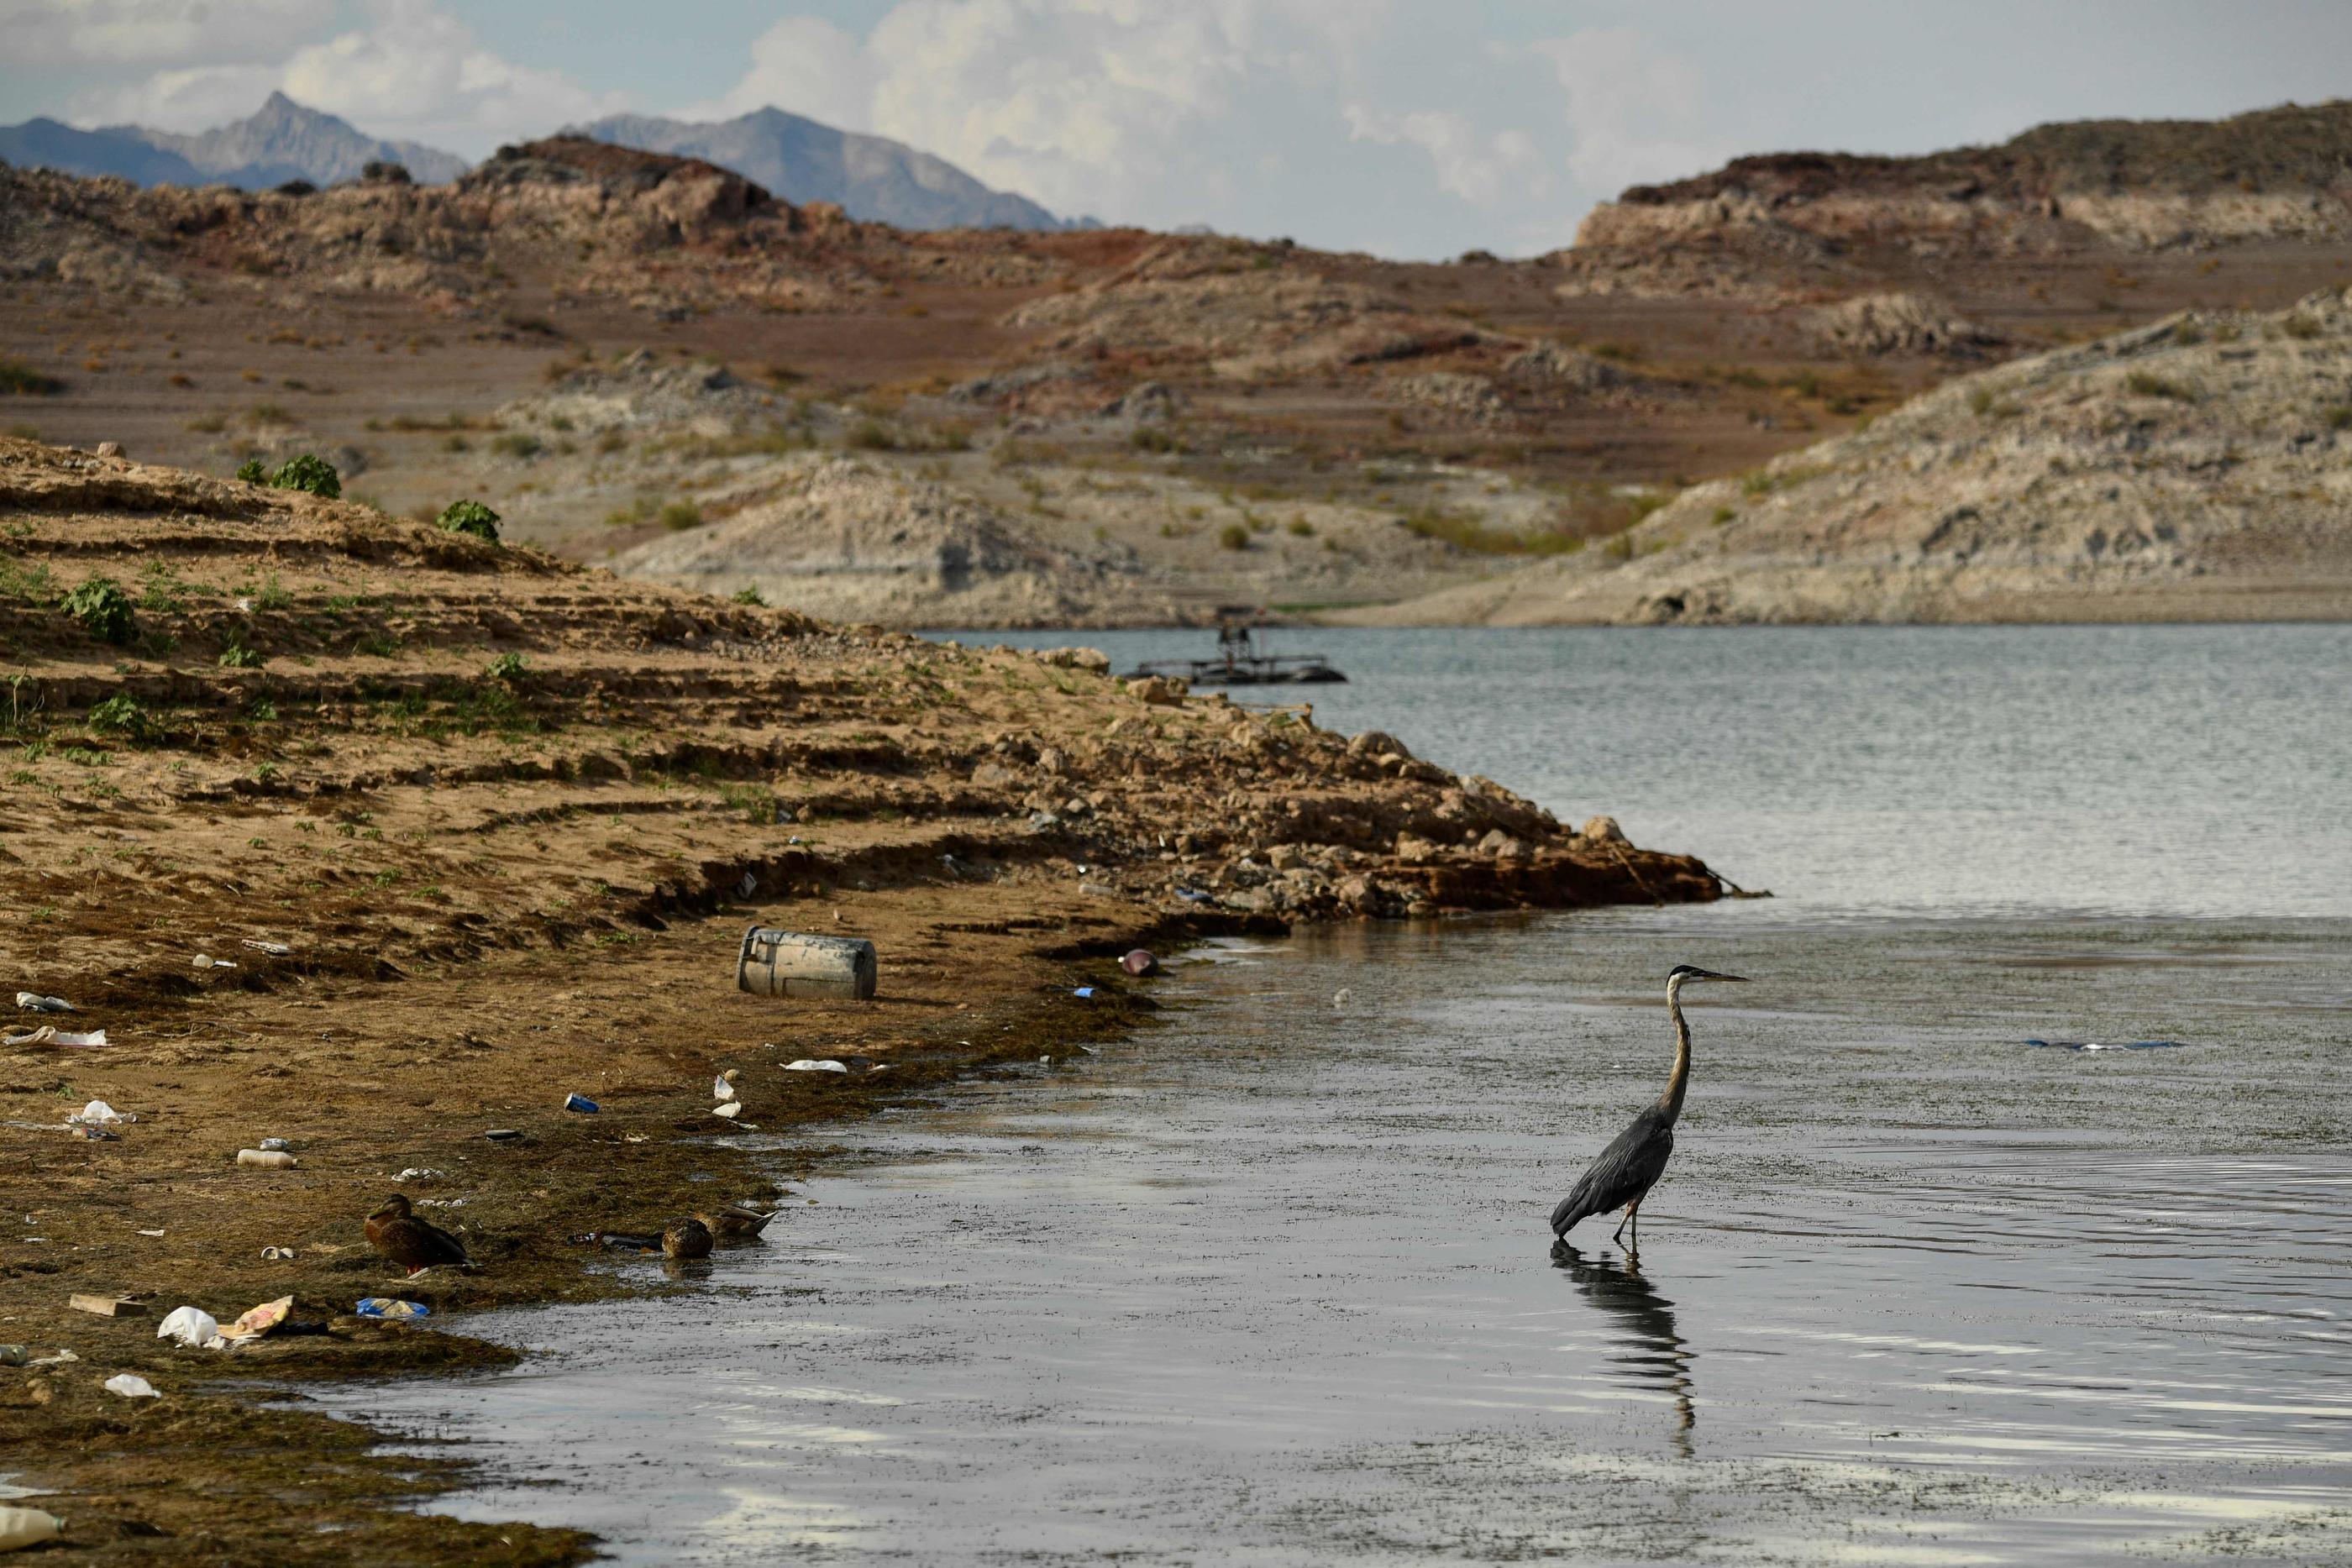 Une photo prise le 19 juillet 2021 montre un oiseau qui se tient dans l'eau parmi les ordures et les débris, visibles pendant les faibles niveaux d'eau en raison de la sécheresse à la marina de Lake Mead sur le fleuve Colorado.